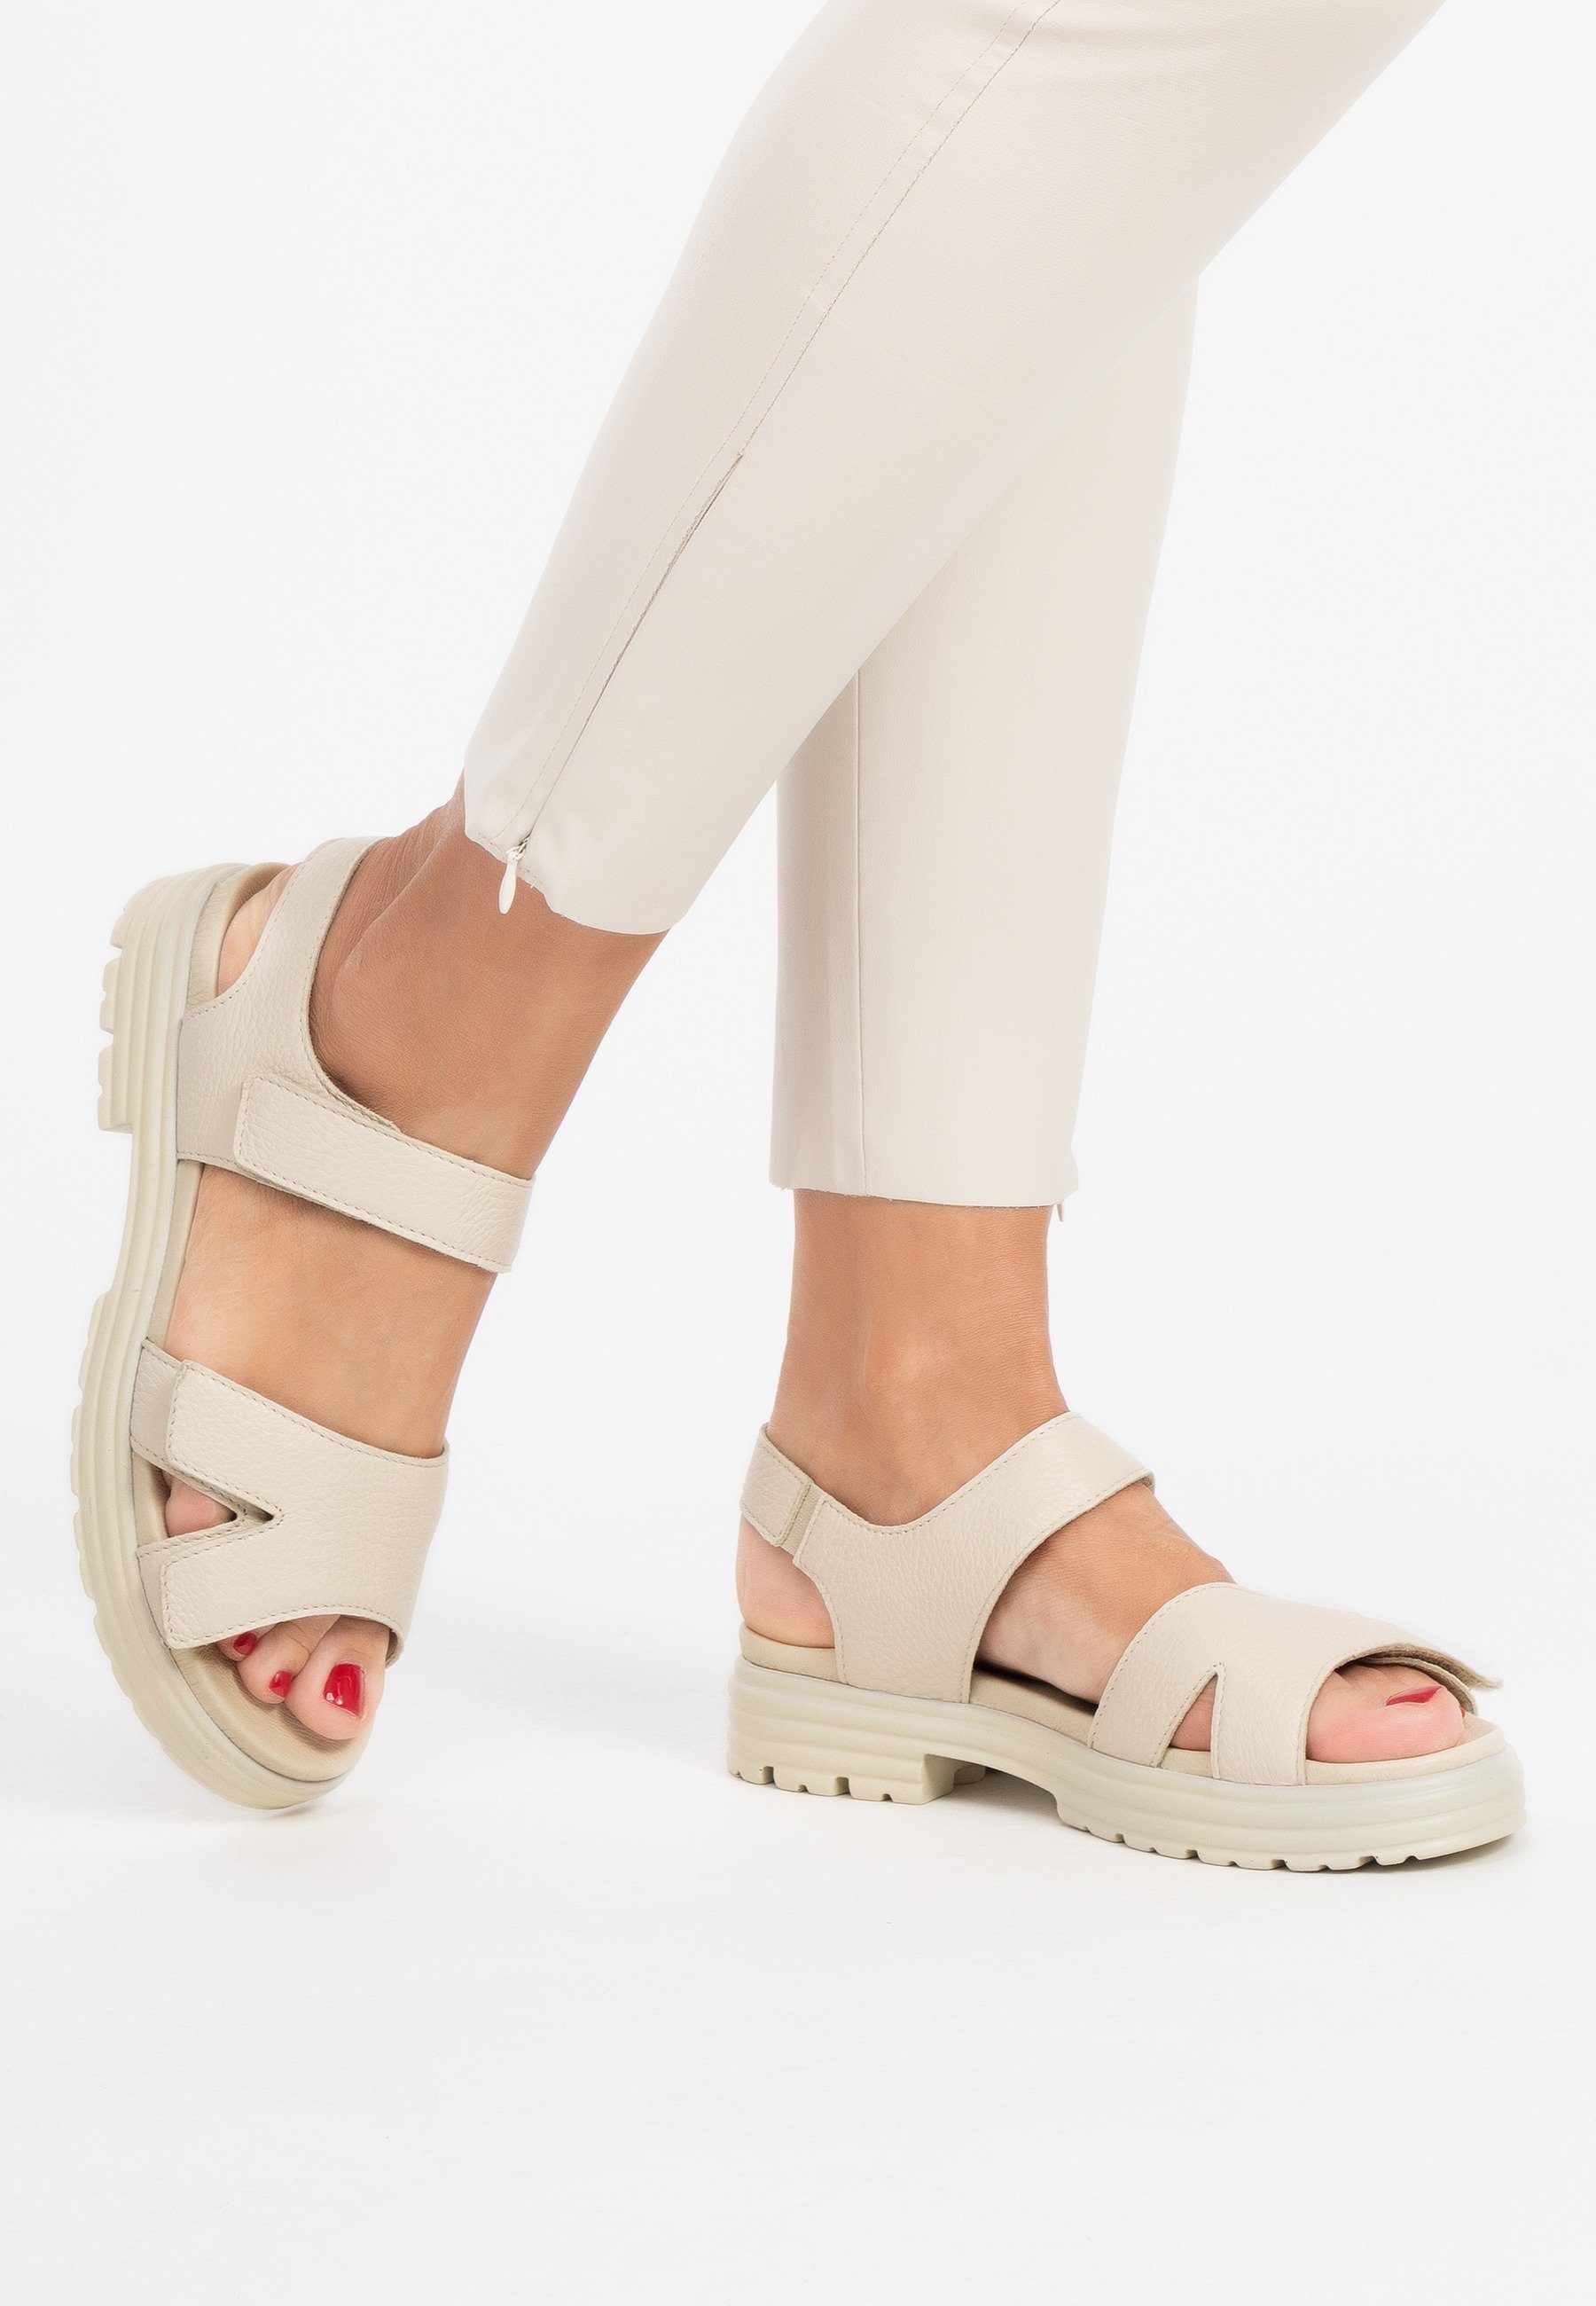 Sandale beige vitaform Damenschuhe Hirschleder Sandale